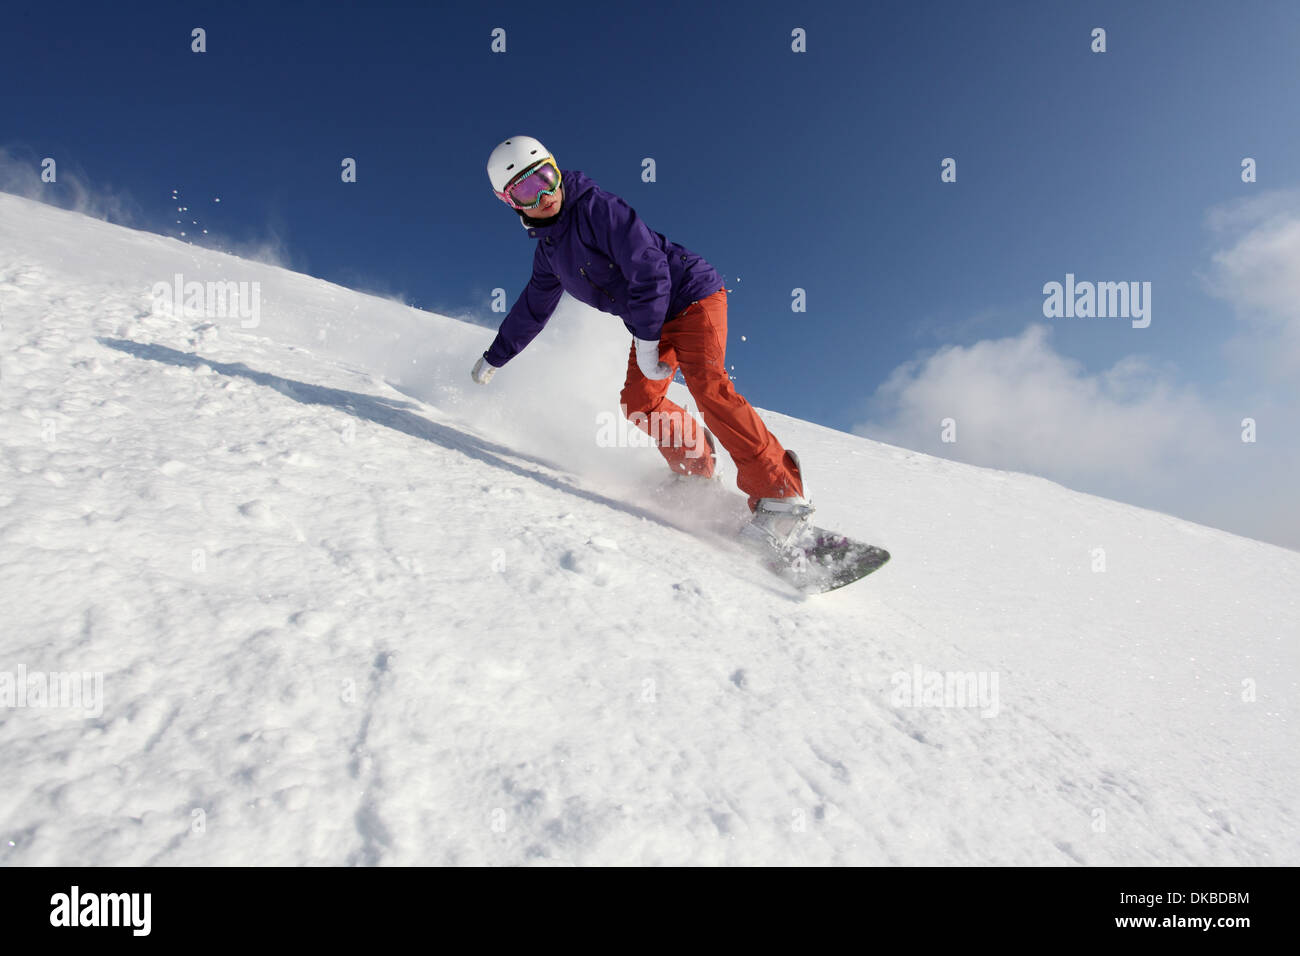 Snowboarder going down mountain Stock Photo